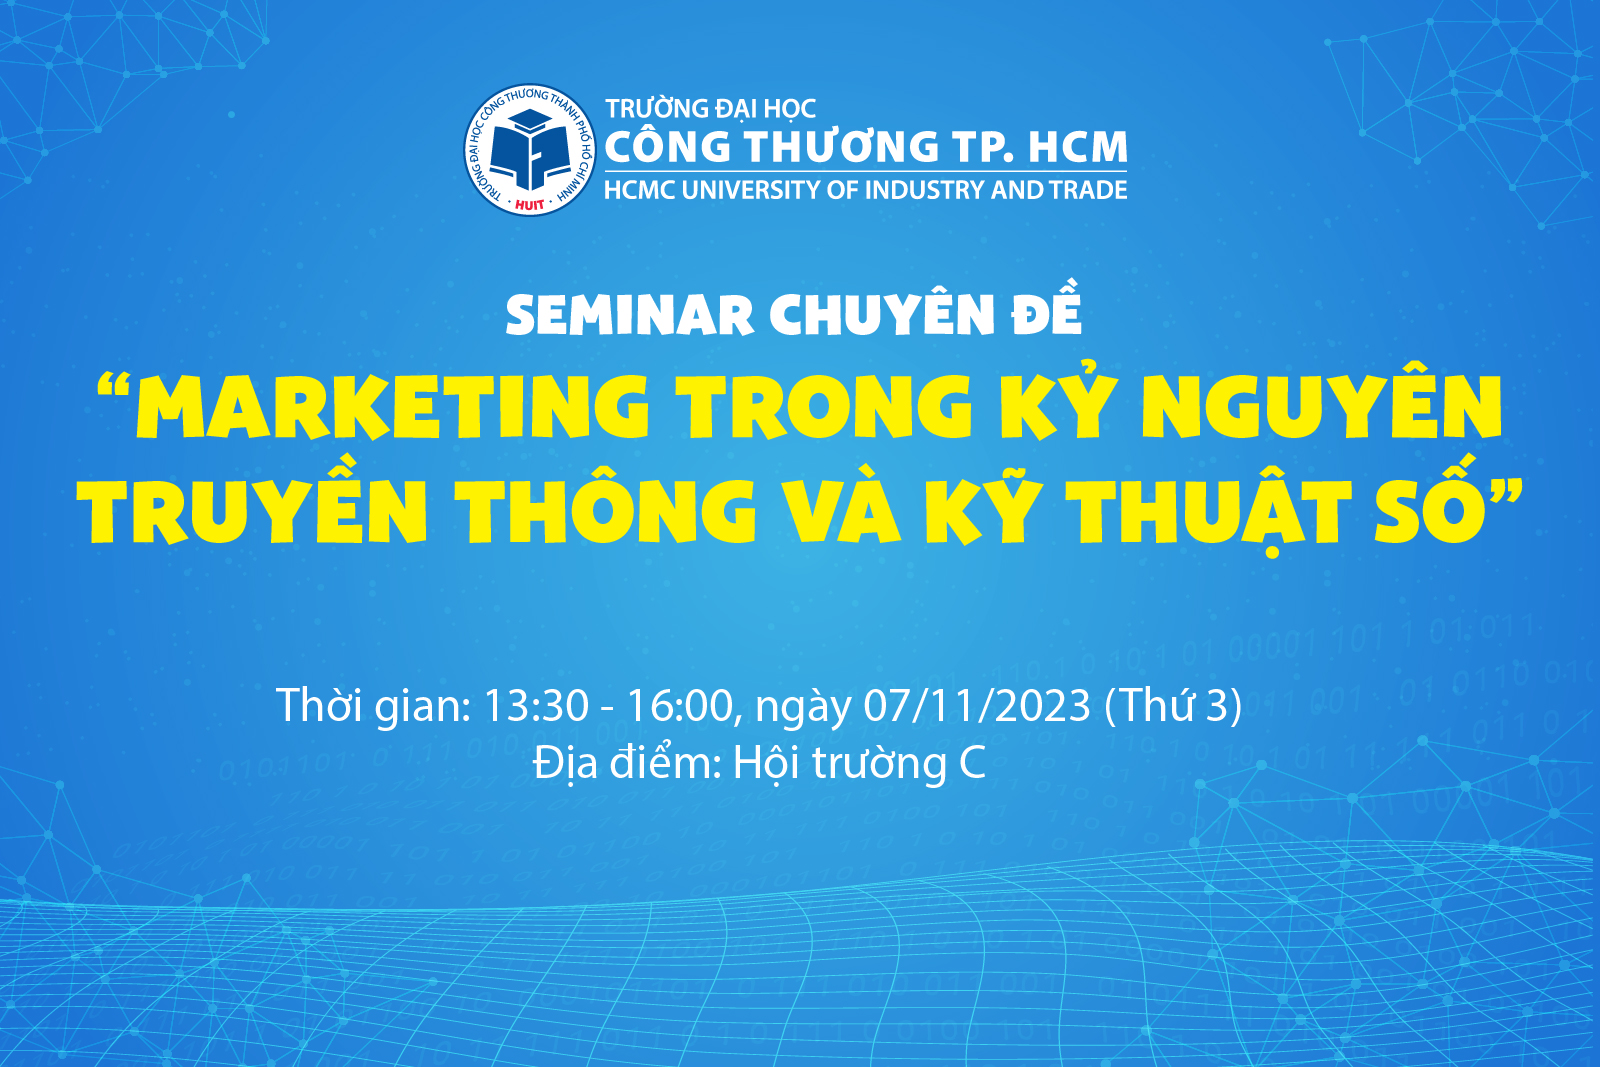 Tổ chức Seminar chuyên đề  “Marketing trong kỷ nguyên truyền thông và kỹ thuật số”